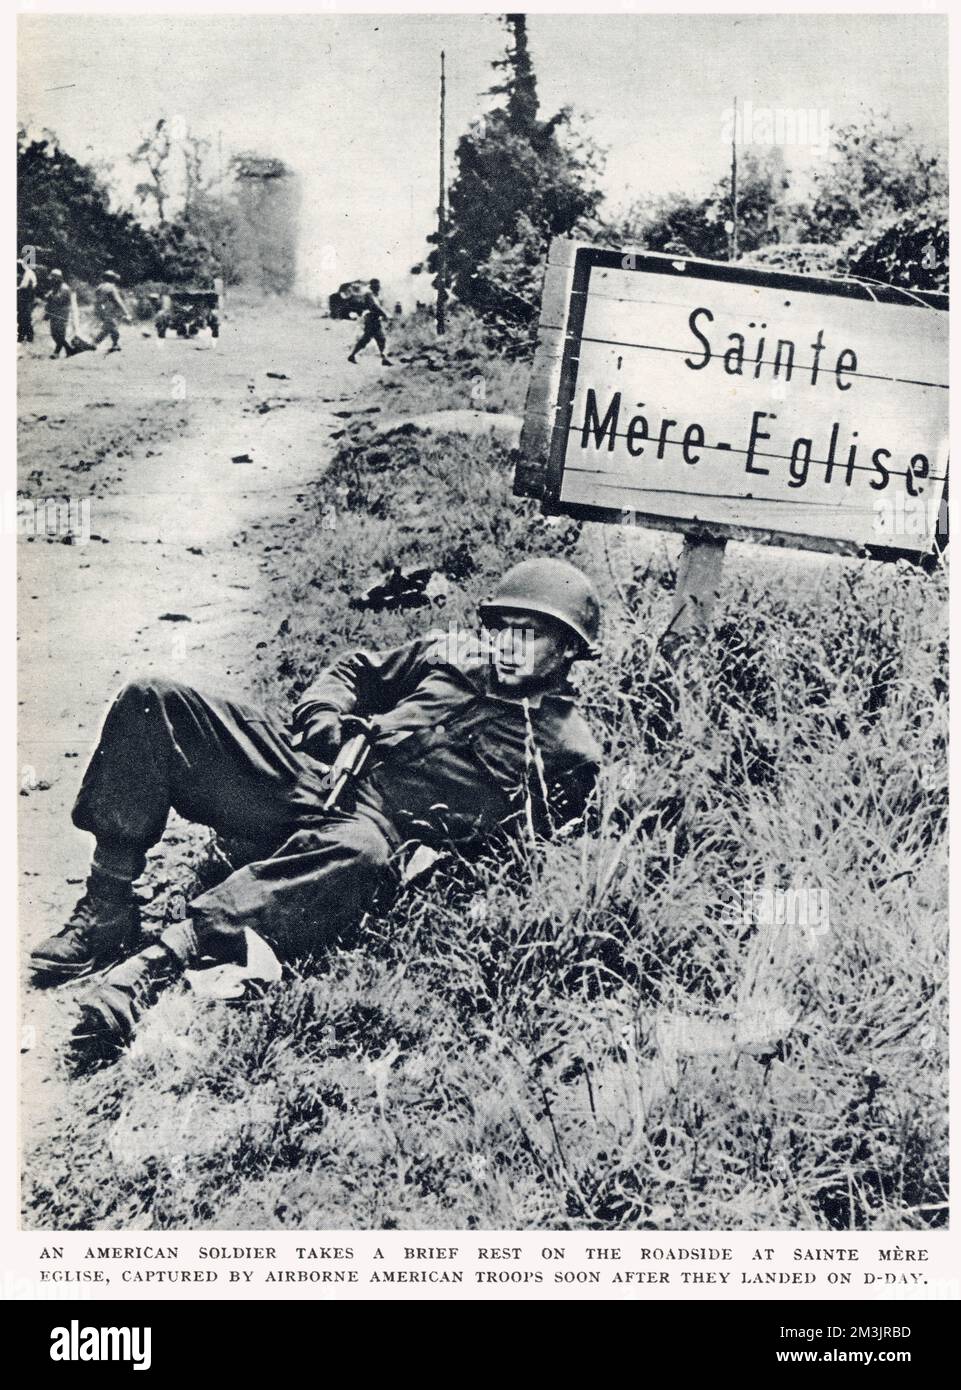 Ein amerikanischer Fallschirmjäger ruht sich kurz am Straßenrand in St. Nur Eglise, Normandie. Diese Stadt wurde von amerikanischen Luftwaffenleuten eingenommen, kurz nachdem sie am D-Day, dem 6. Juni 1944, gelandet waren. Stockfoto